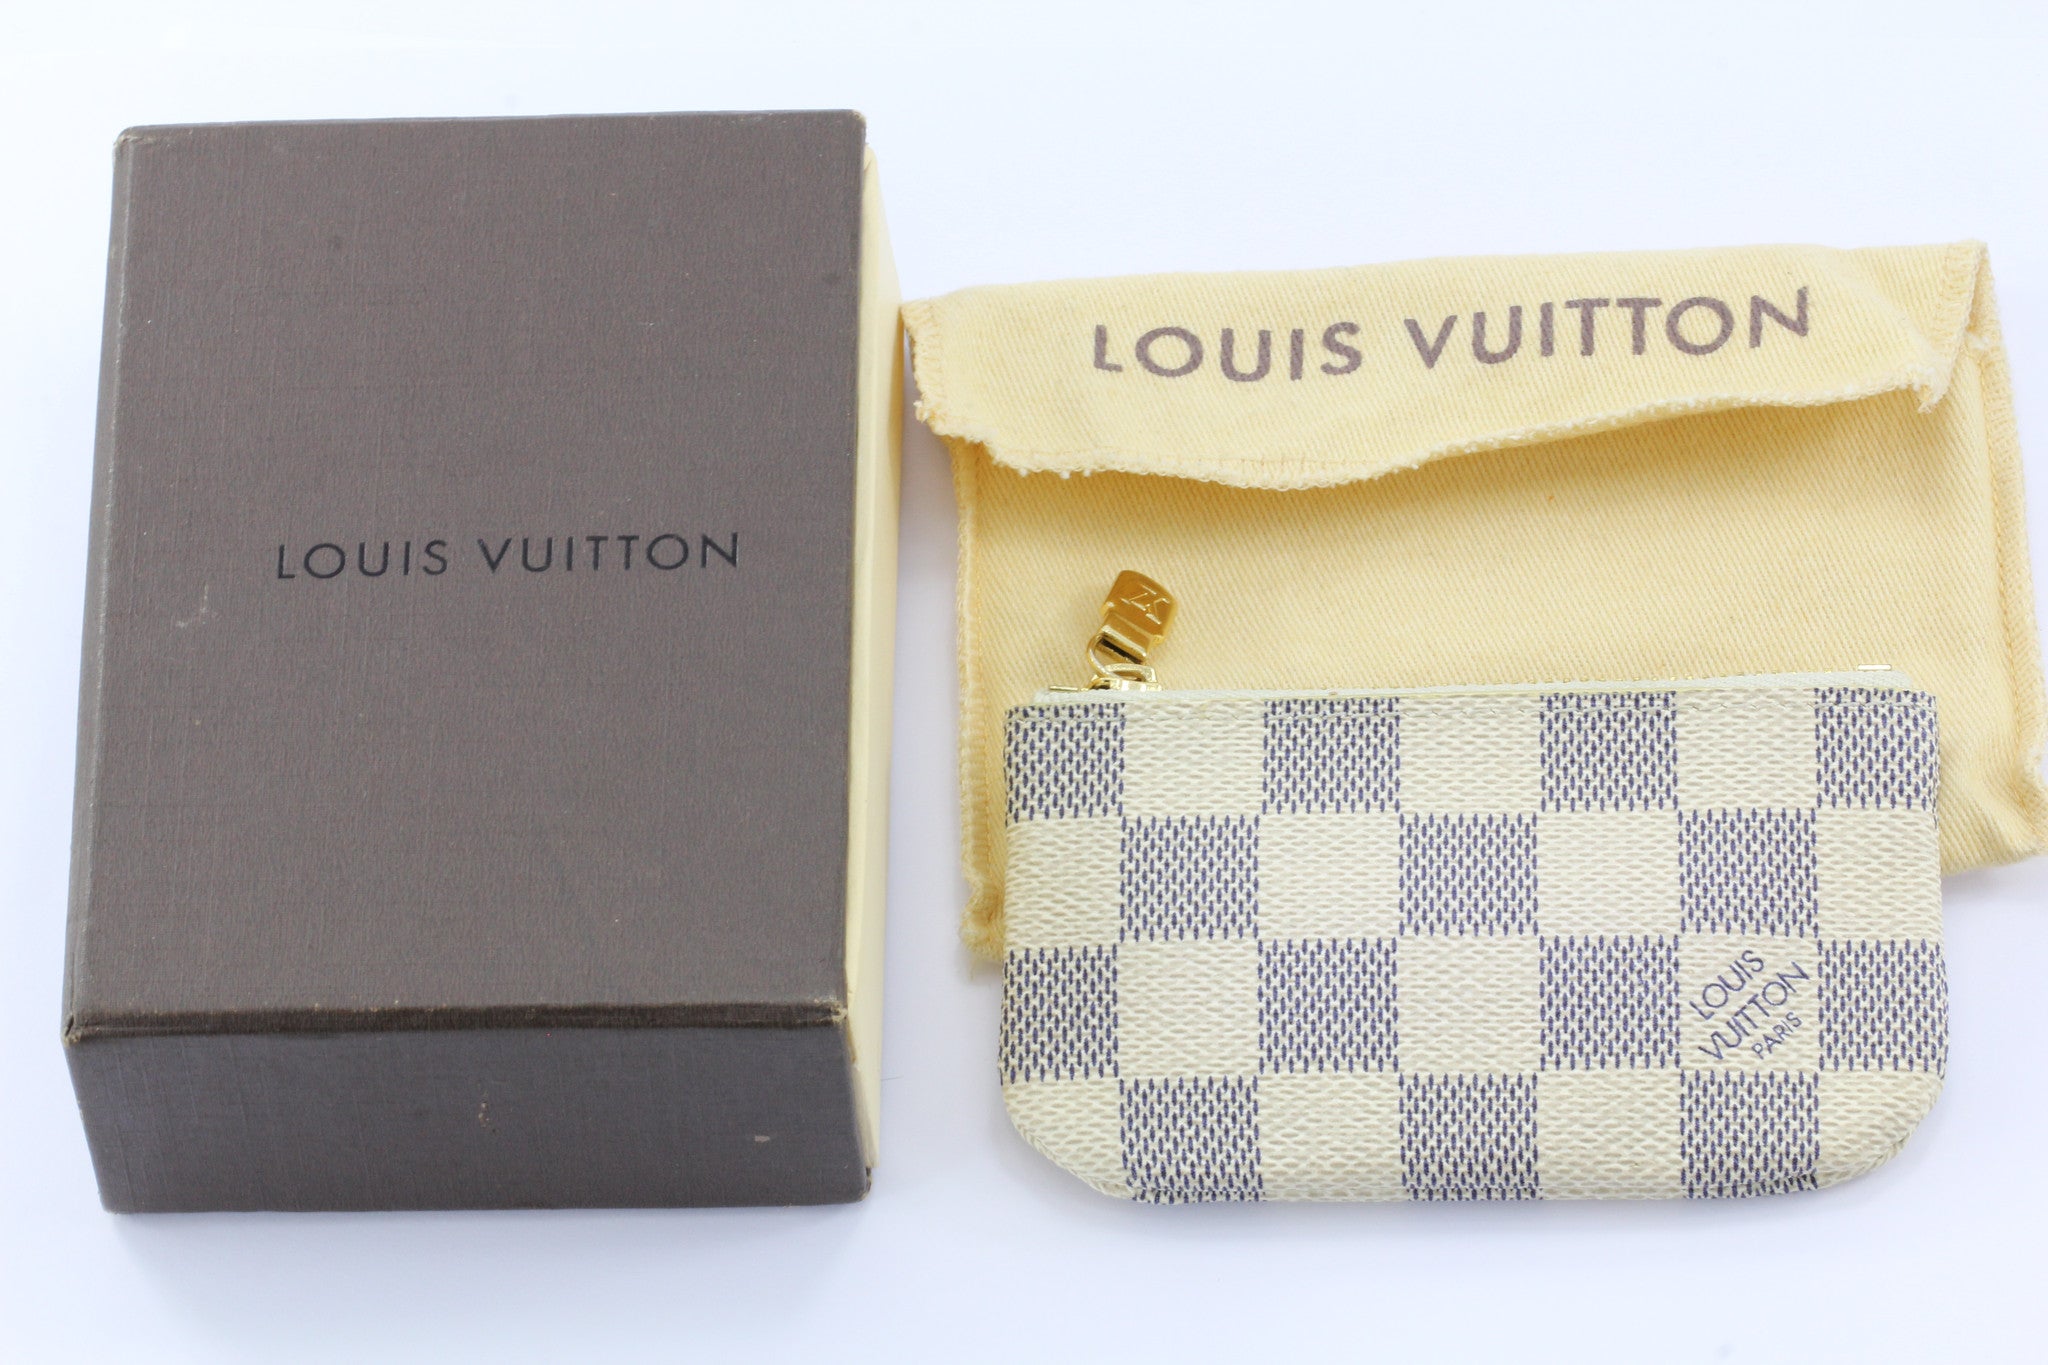 Louis Vuitton 101: The Noé and NéoNoé - The Vault